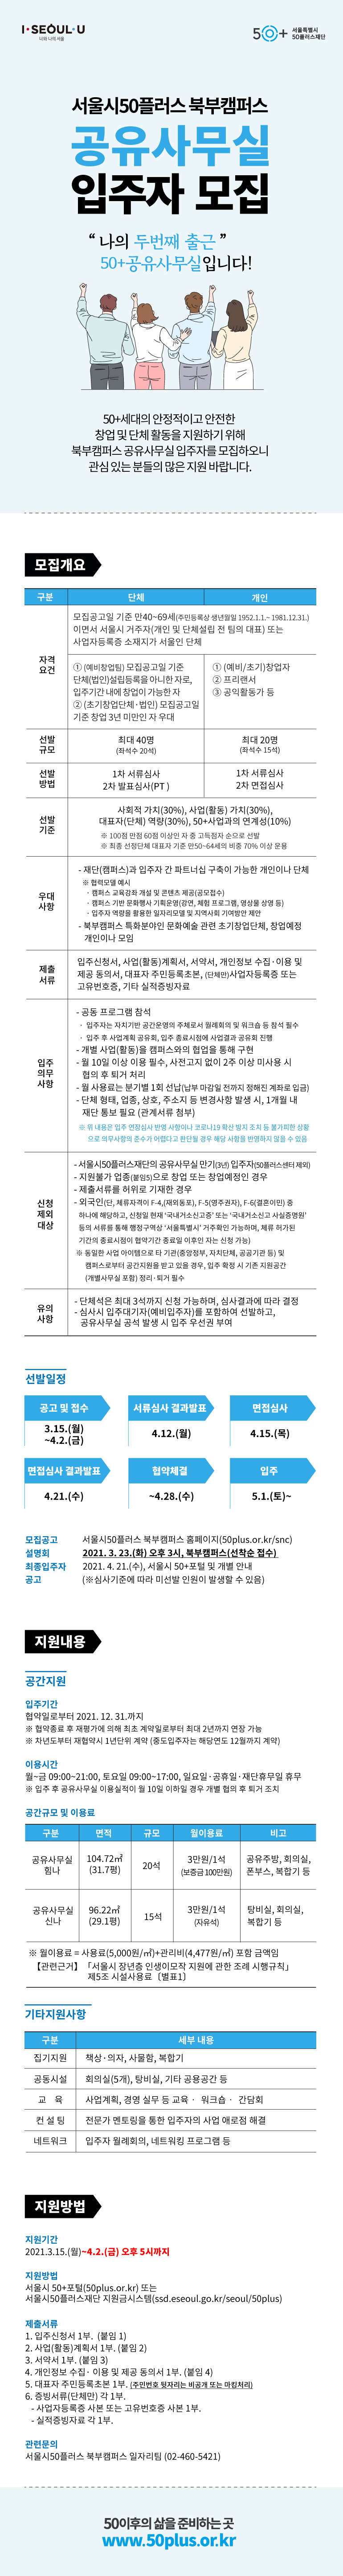 붙임3+서울시50플러스+북부캠퍼스+공유사무실+입주자+모집.png